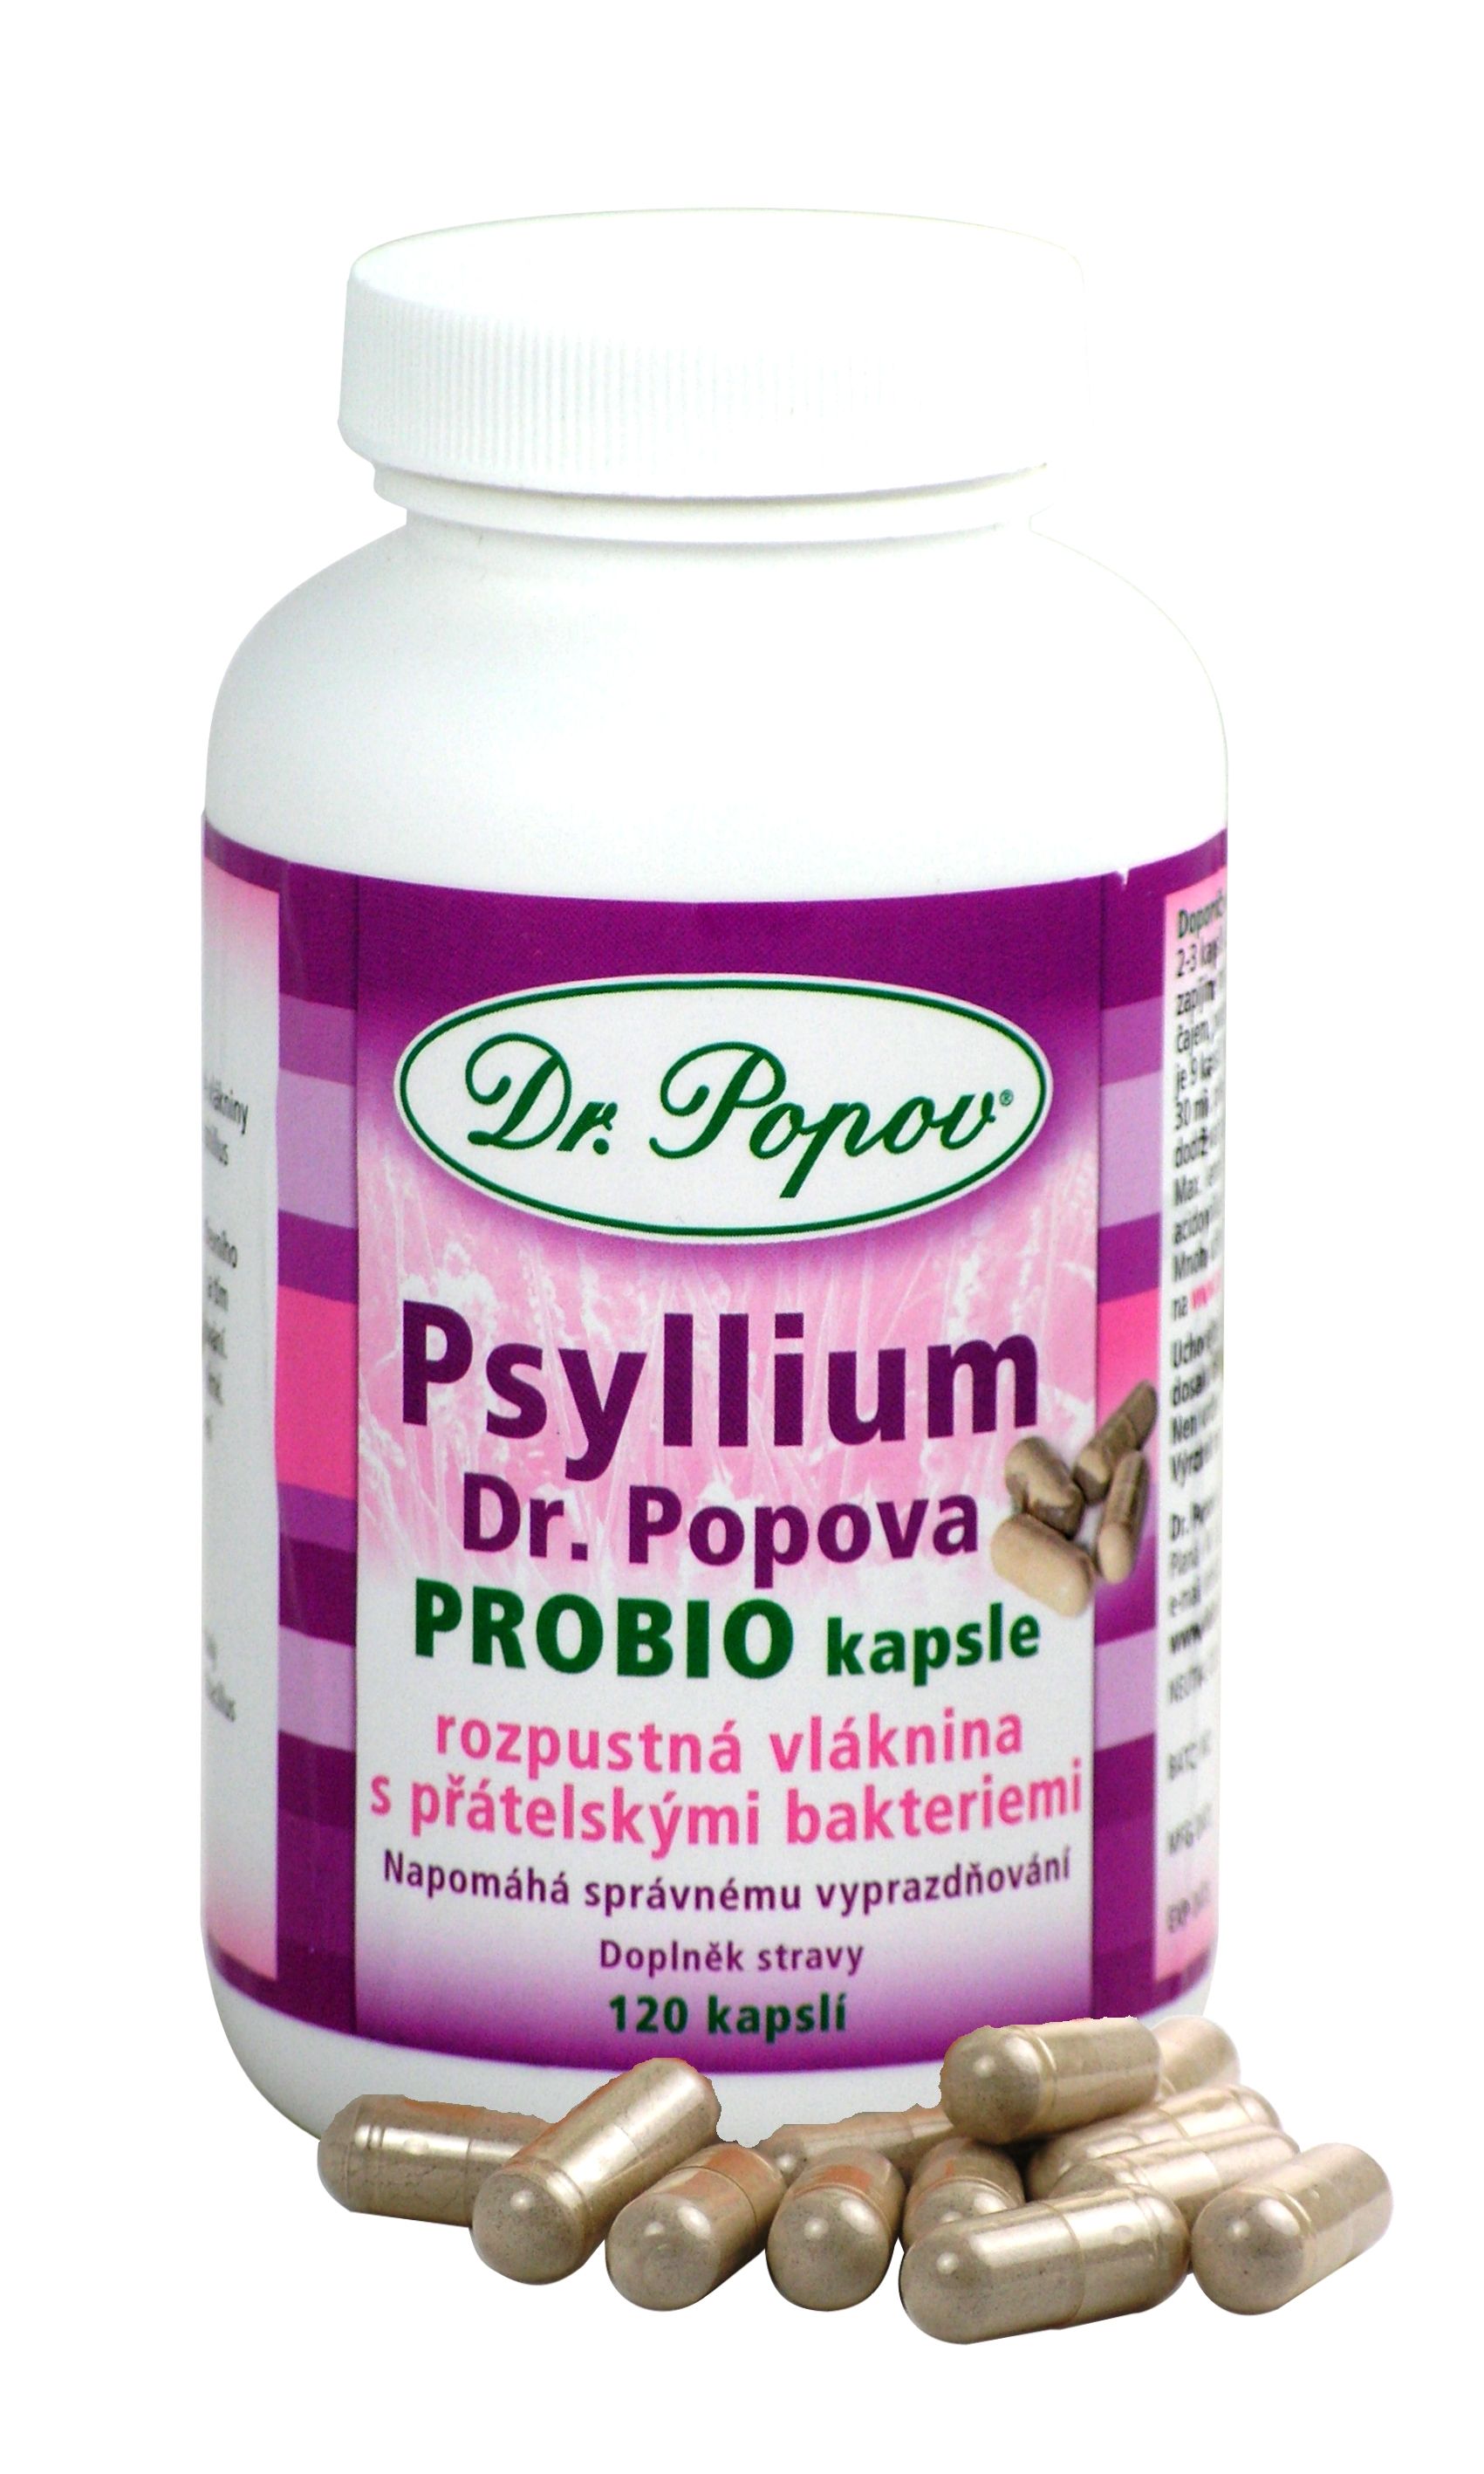 Dr. Popov Psyllium Probio 120 kapslí Dr. Popov